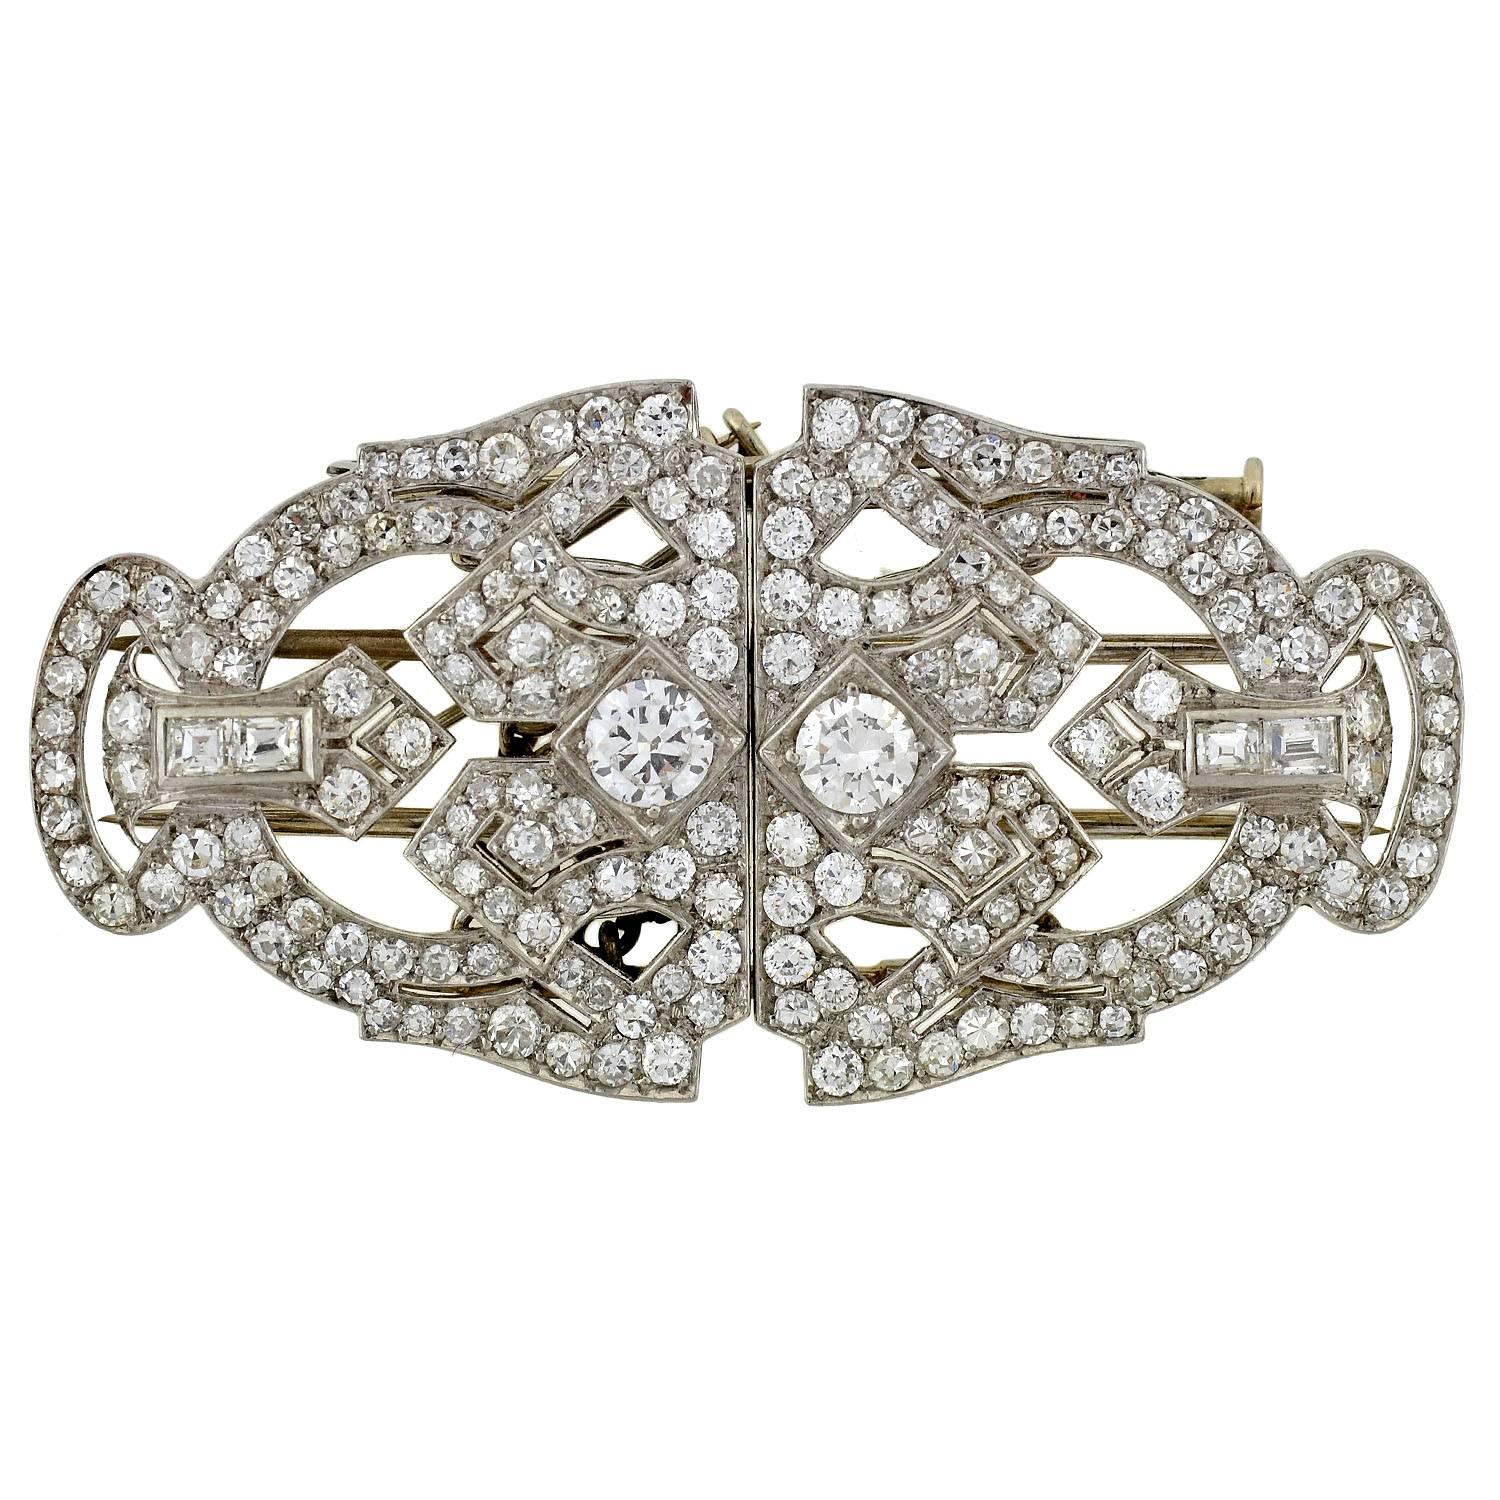 Une épingle à clip en platine et diamants absolument exquise de l'époque Art Déco (ca1920) ! Cette pièce merveilleuse et inhabituelle est réalisée en platine et incrustée de 3,51 carats de diamants étincelants. Composée de deux pinces en fourrure